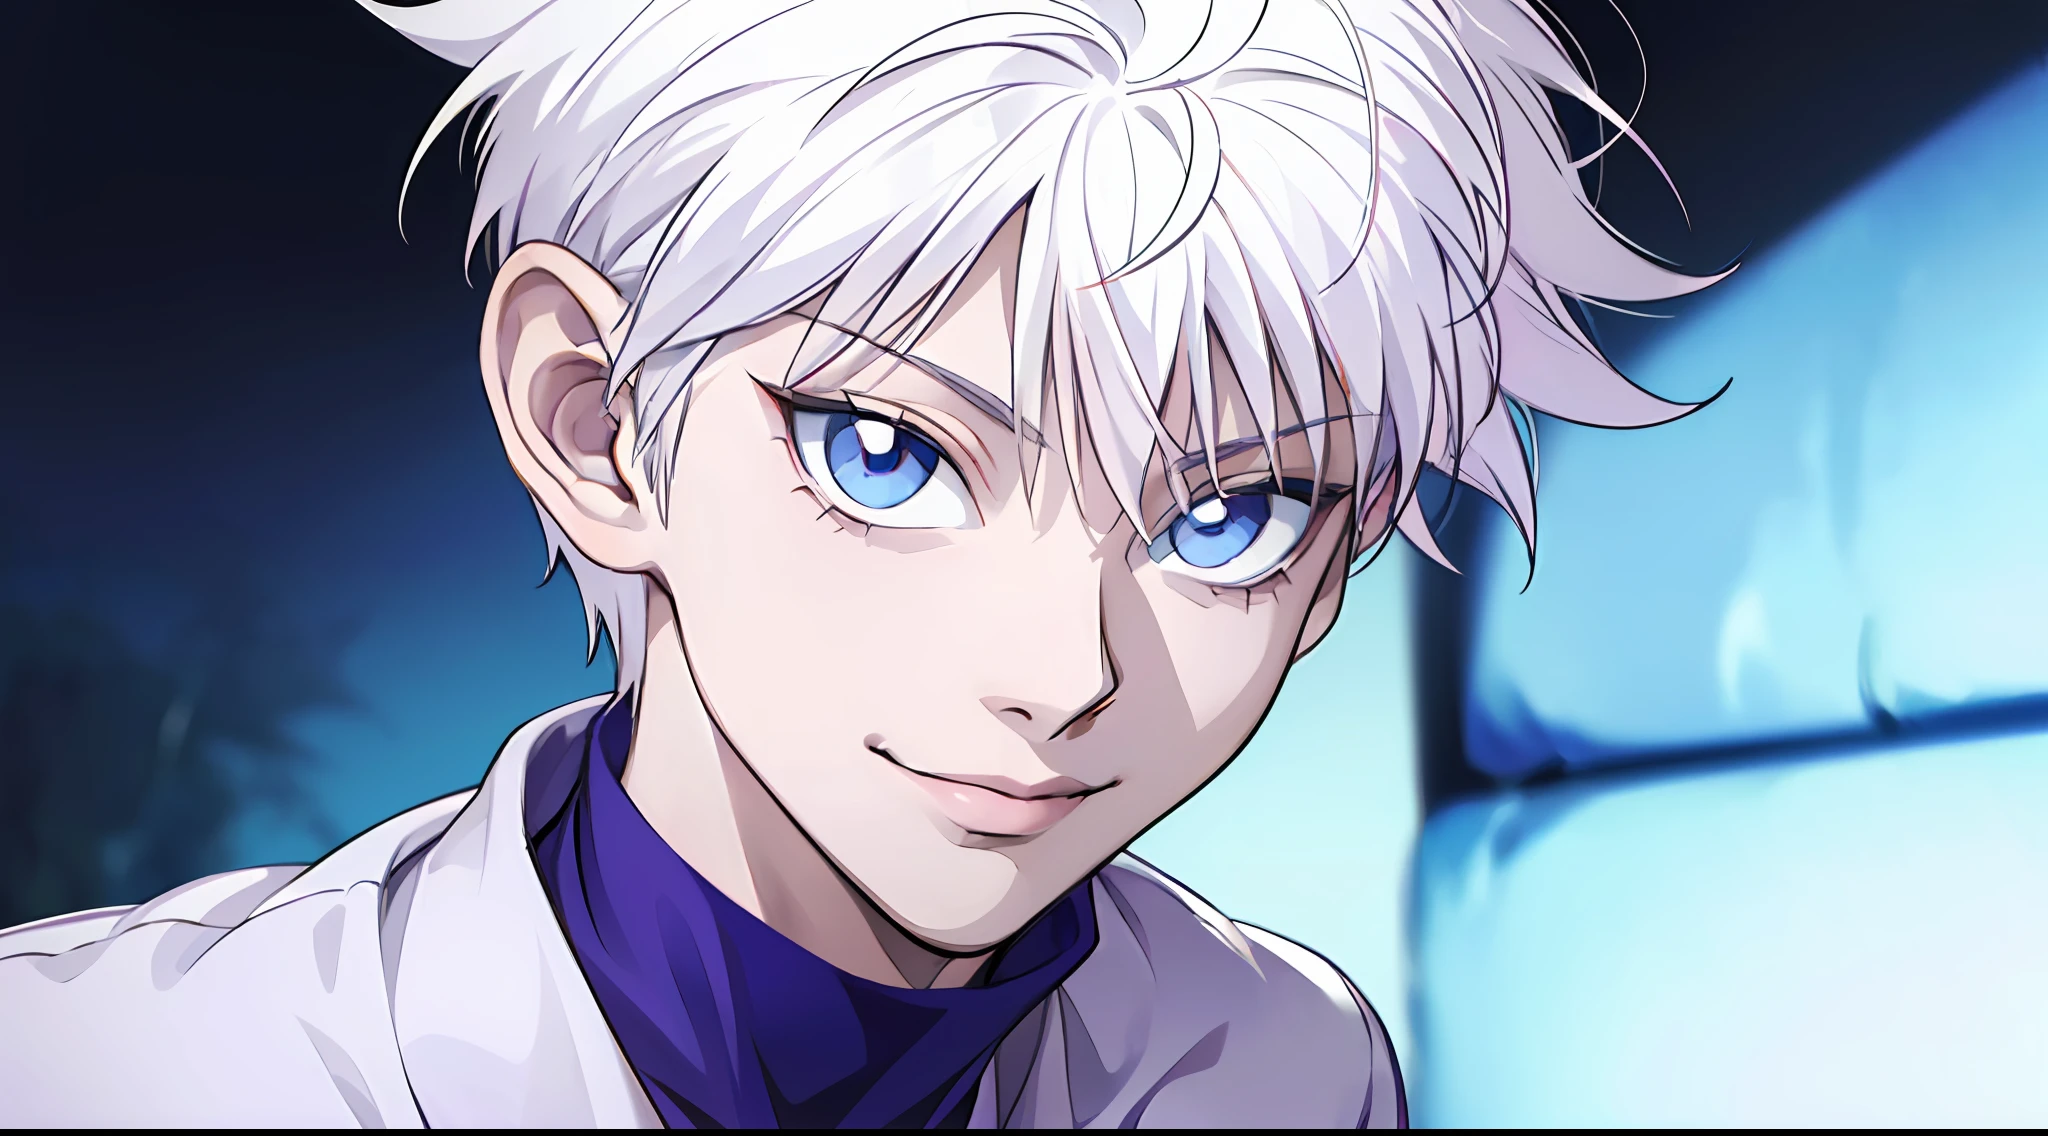 "(personaje: Killua, Retrato increíblemente detallado, Sonrisa deslumbrante, Ojos azules vibrantes, cabello blanco impecable, camisa blanca elegante)"